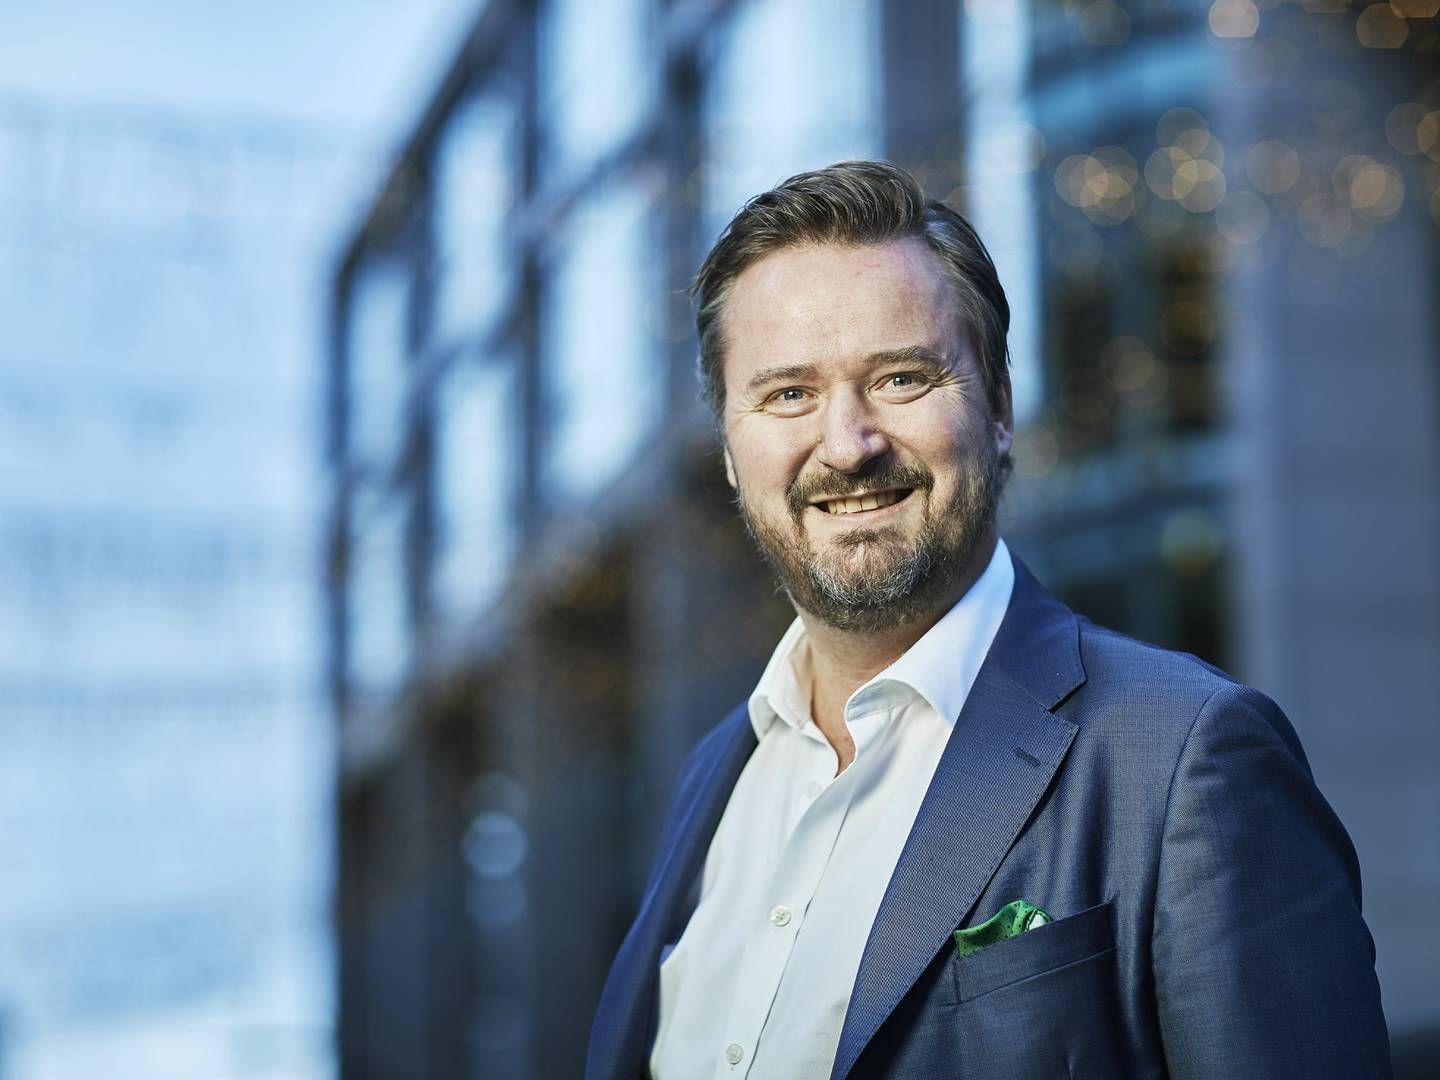 STOR INTERESSE: CBRE opplever god kjøpsinteresse for eiendom av sentral beliggenhet, ifølge Alexander Stensrud, leder for CBREs transaksjonsteam i Norge. | Foto: CBRE